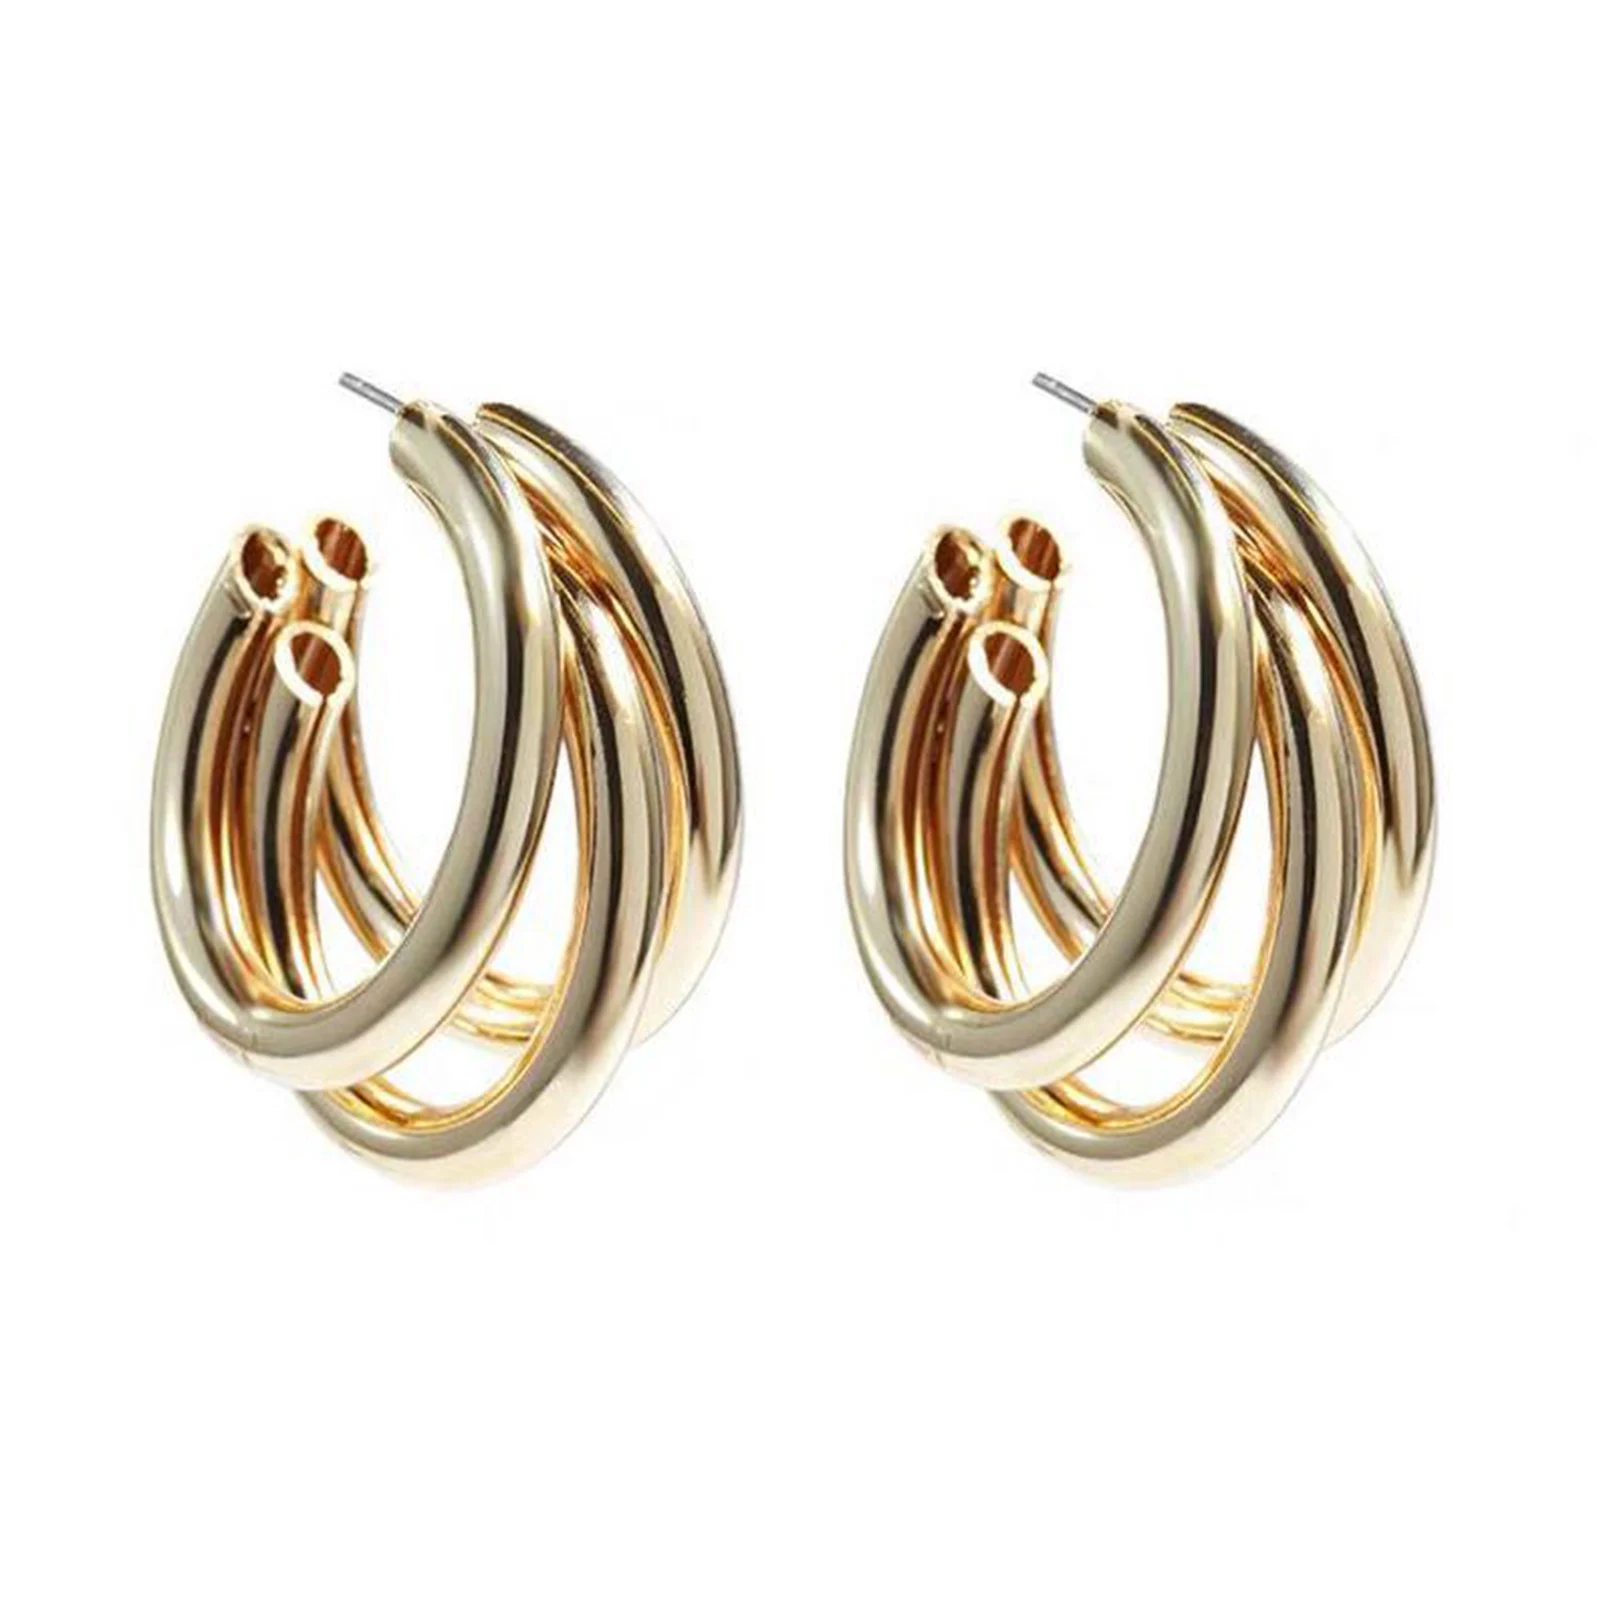 Triple Hoop Earrings For Women 925 Silver Stud Earrings For Women Hoop Earrings For Sensitive Girls Ears 14K Gold Plated Rose